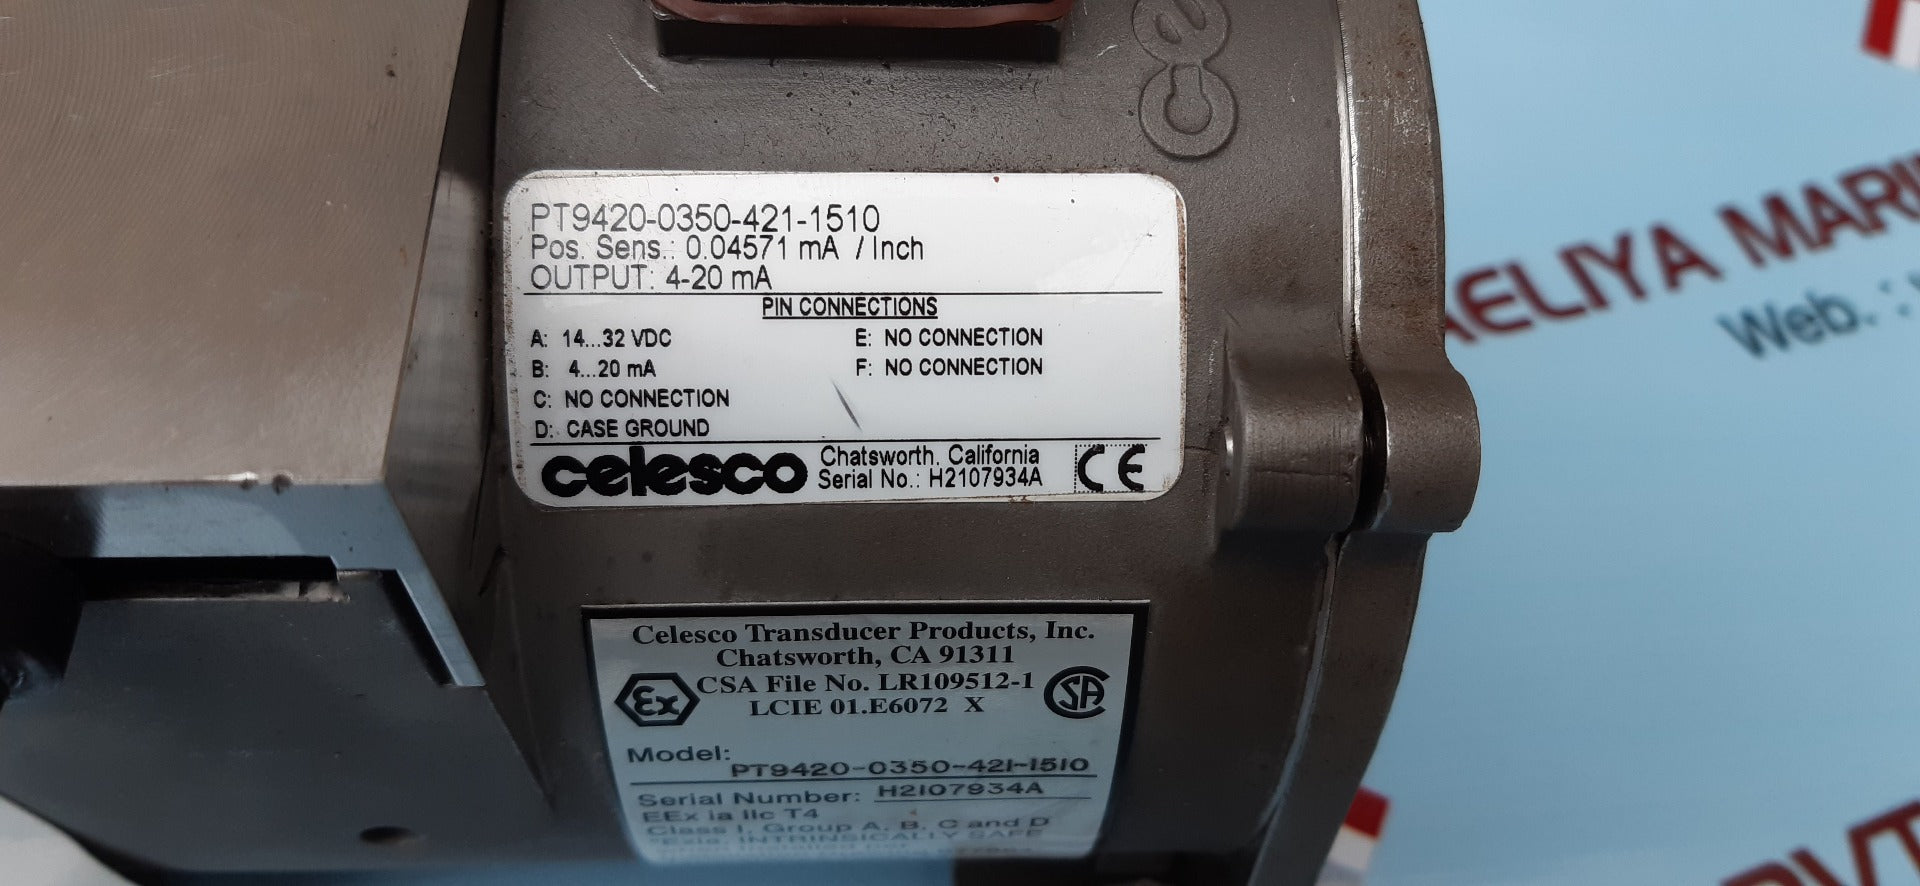 Celesco Pt9420-0350-421-1510 Transducer Spool Cable Actuated Sensor 4-20 Ma